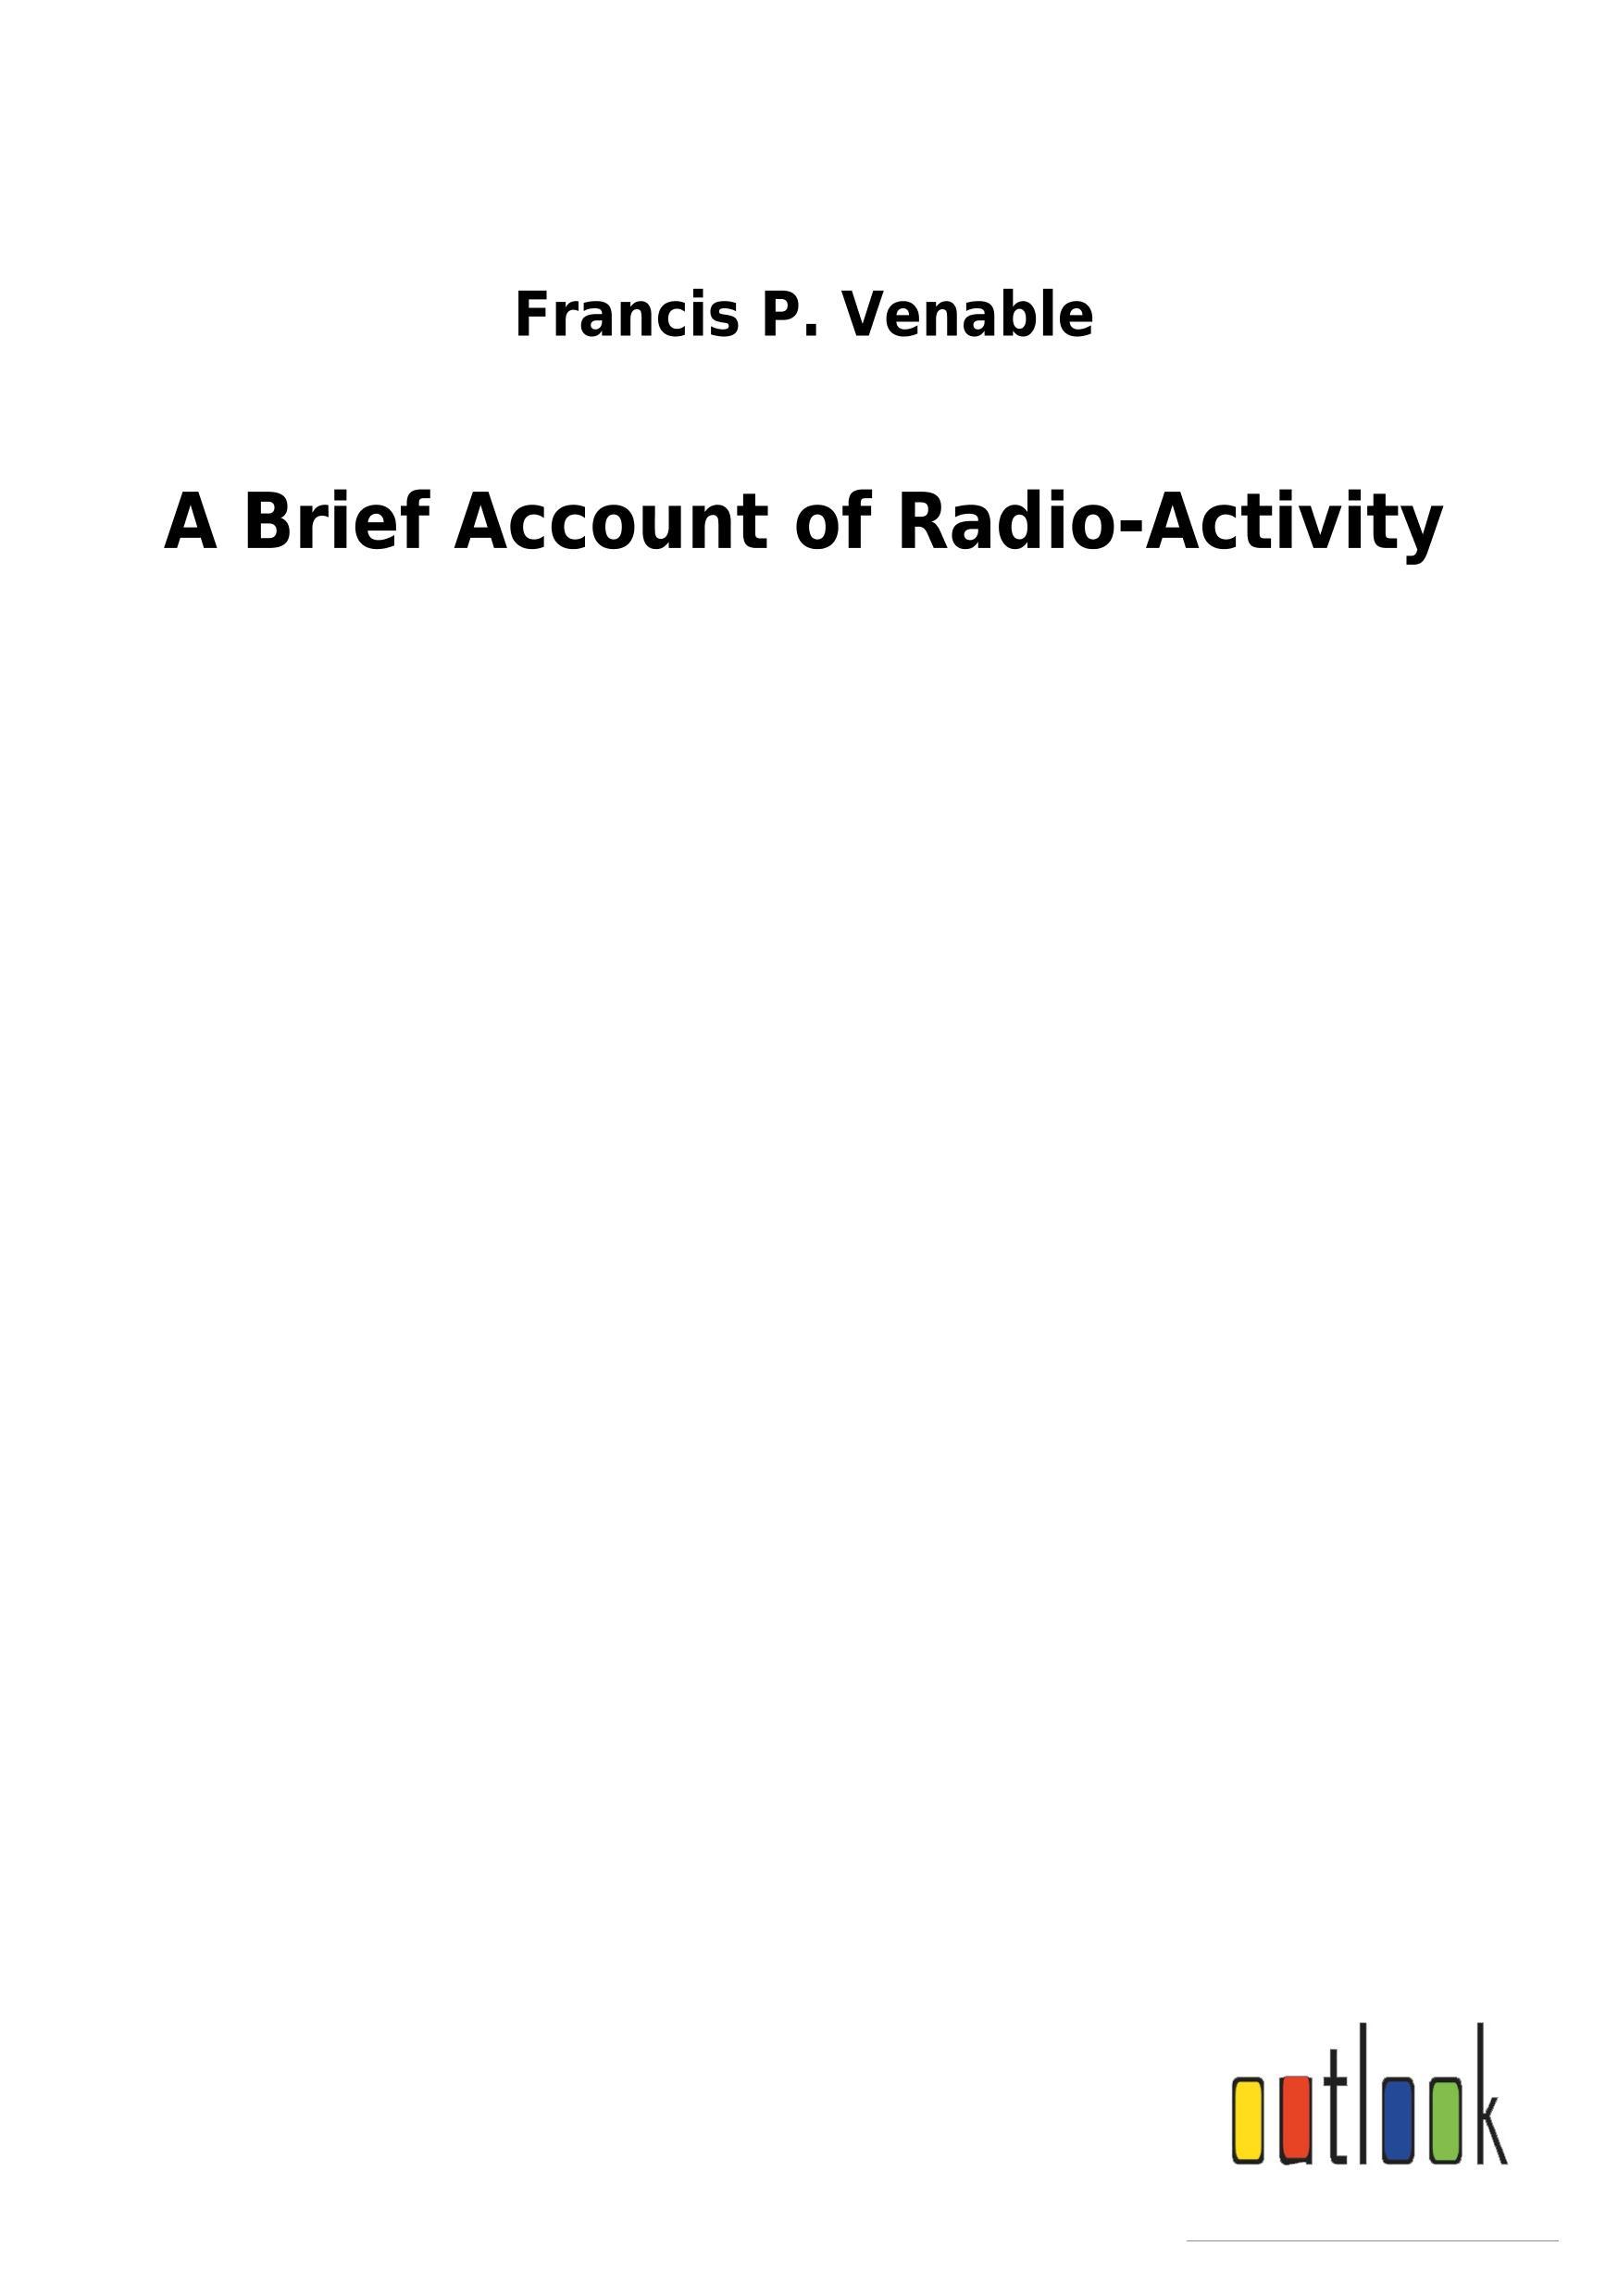 A Brief Account of Radio-Activity - Venable, Francis P.